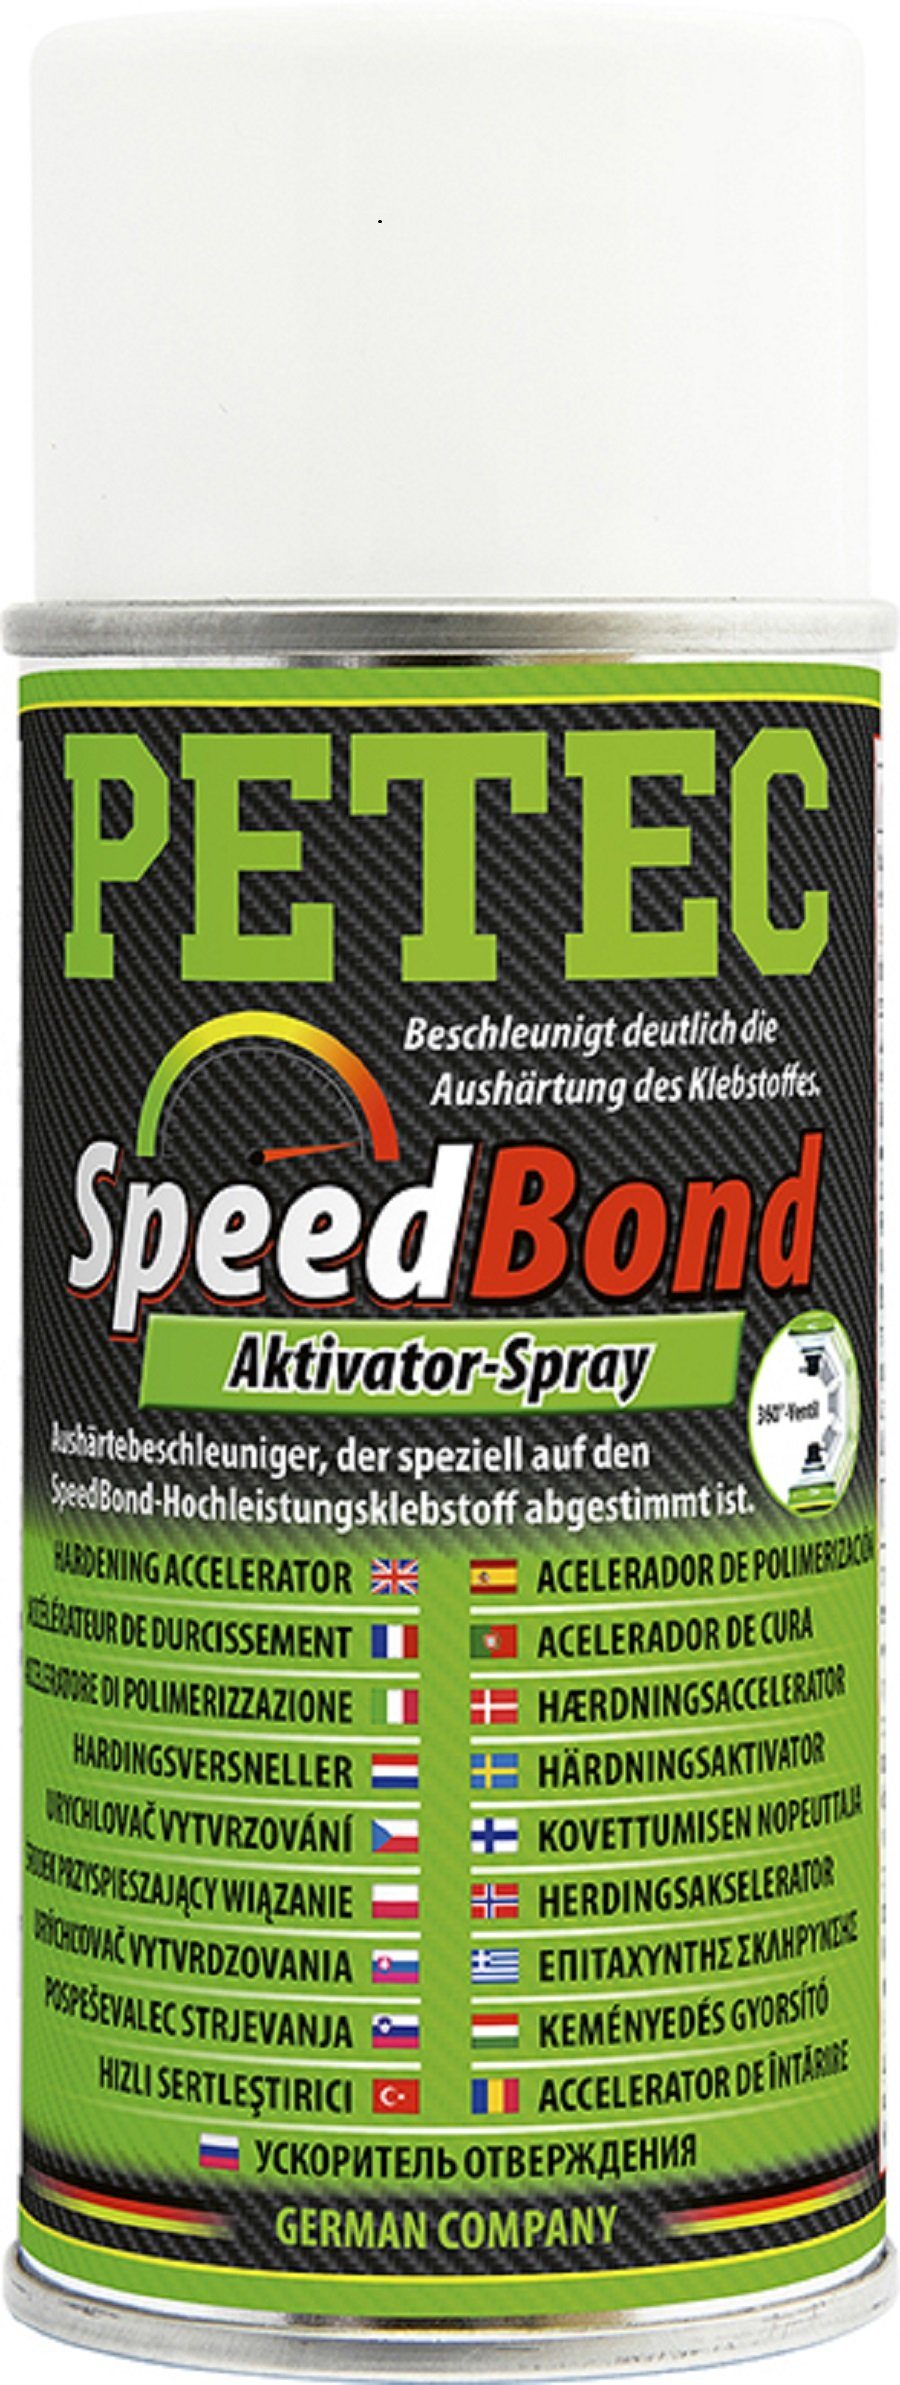 Kleberspachtel SpeedBond 93515 Petec Spray Petec Aktivator